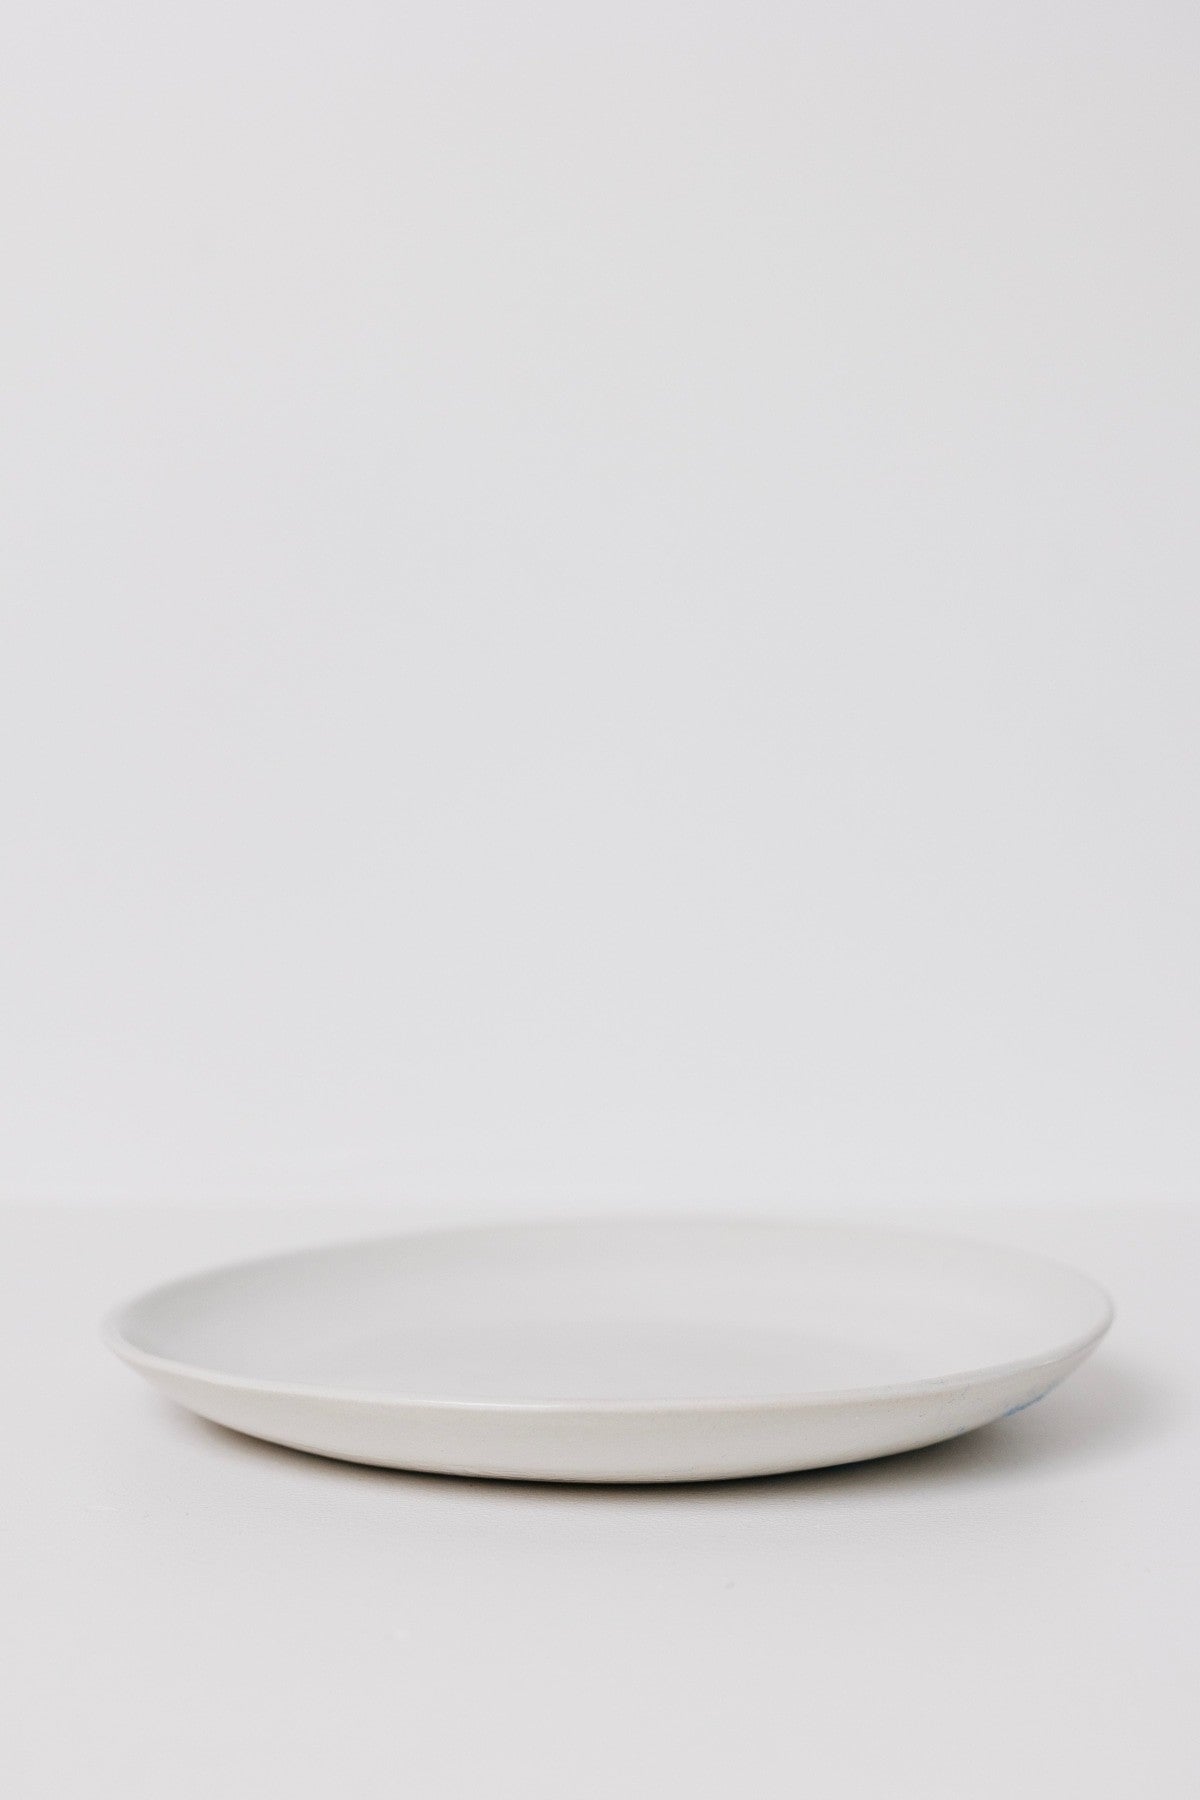 Drift Dinner Plate - Matte White - Set of 6